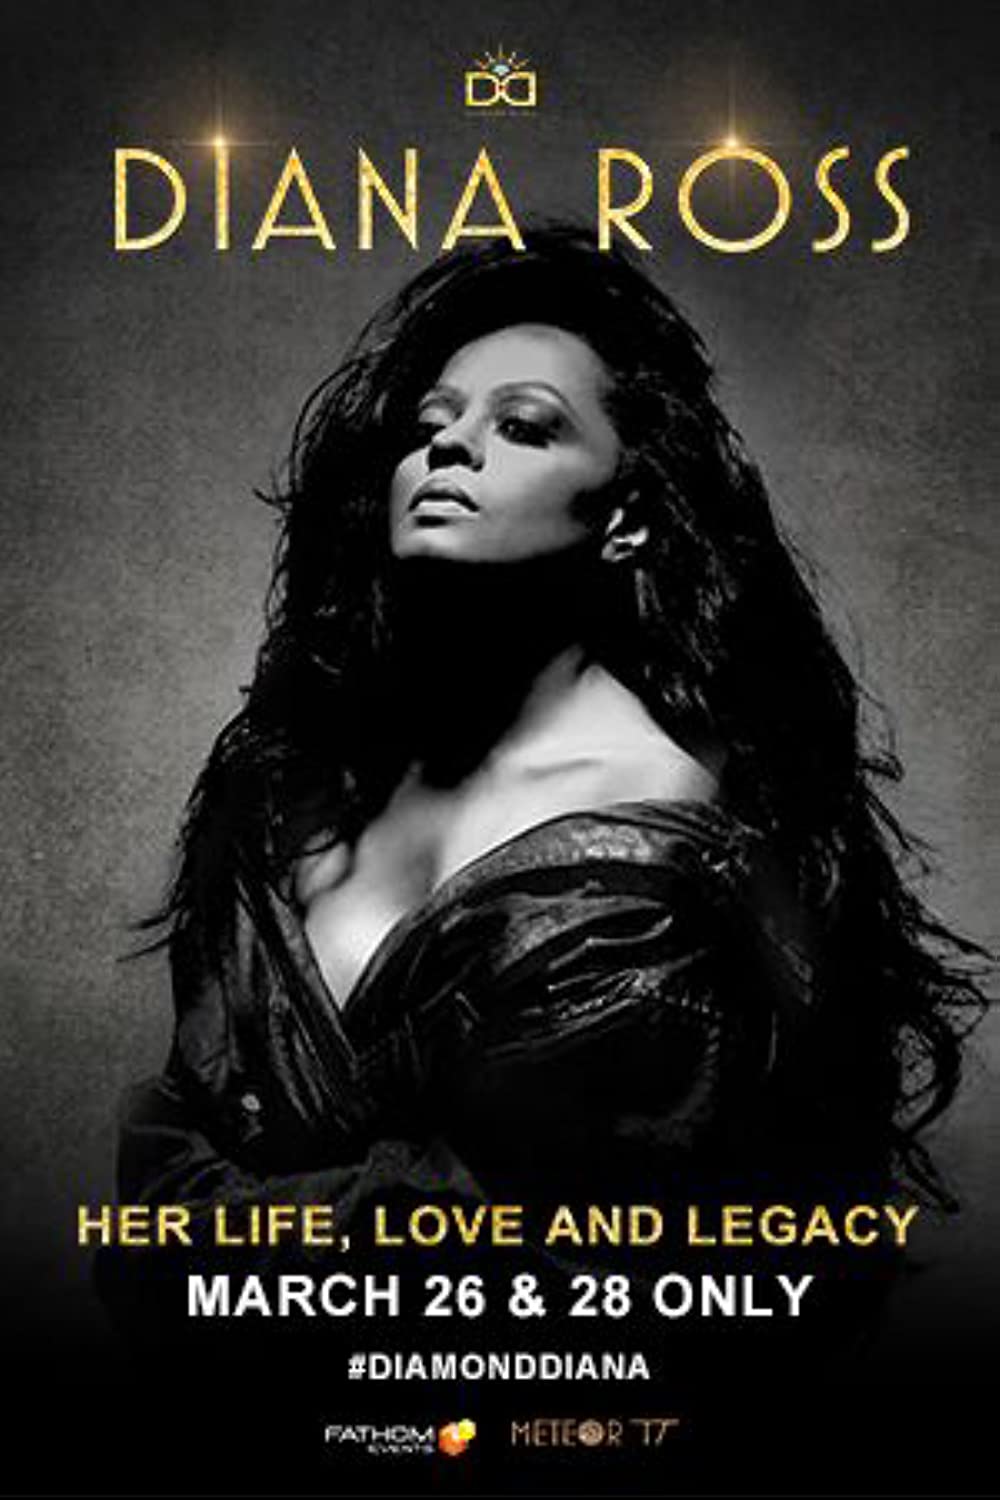 Filmbeschreibung zu Diana Ross: Her Life, Love and Legacy